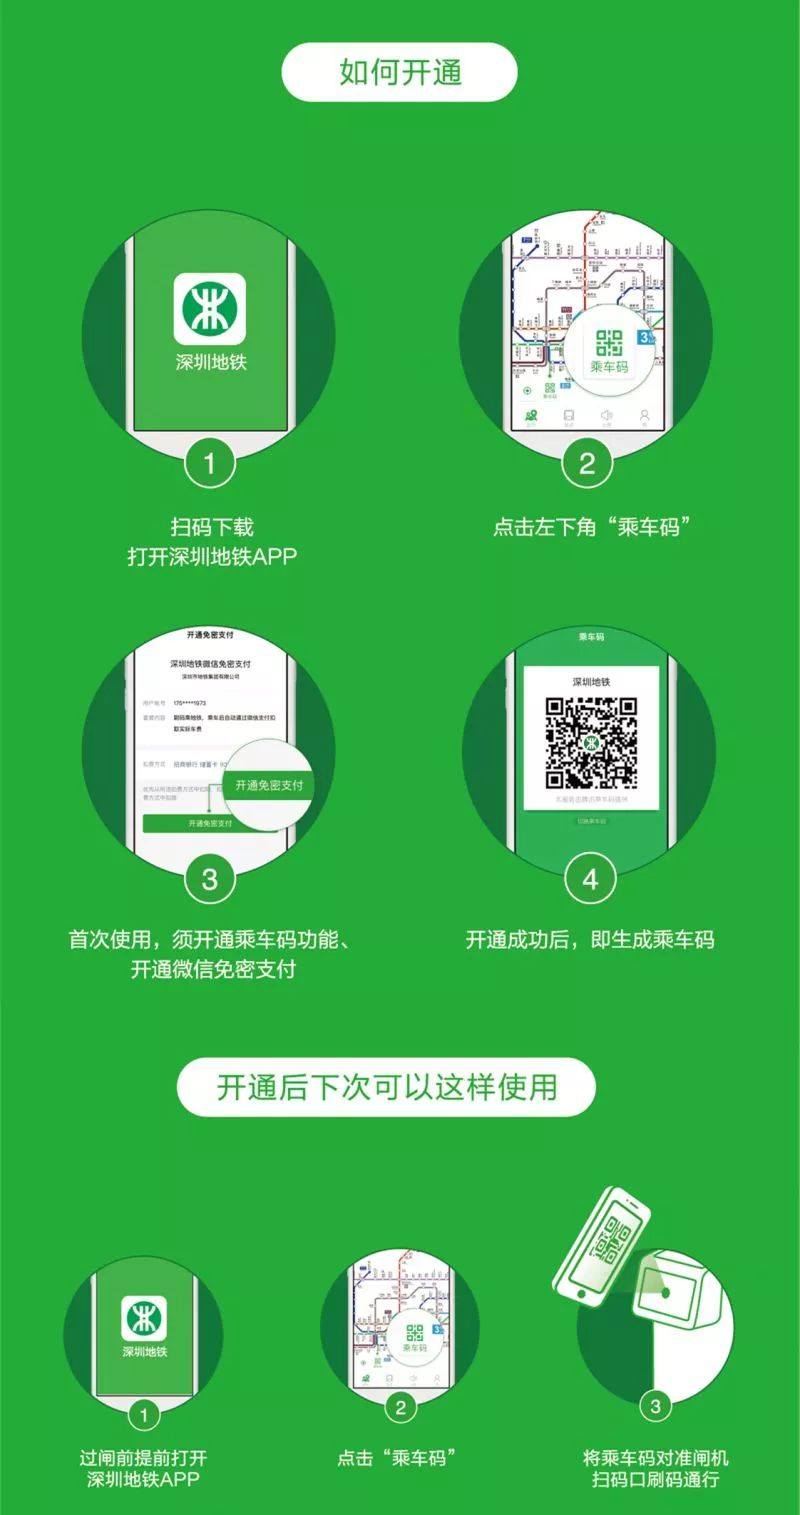 深圳地铁乘车码首波优惠活动开启 刷手机乘车随机立减